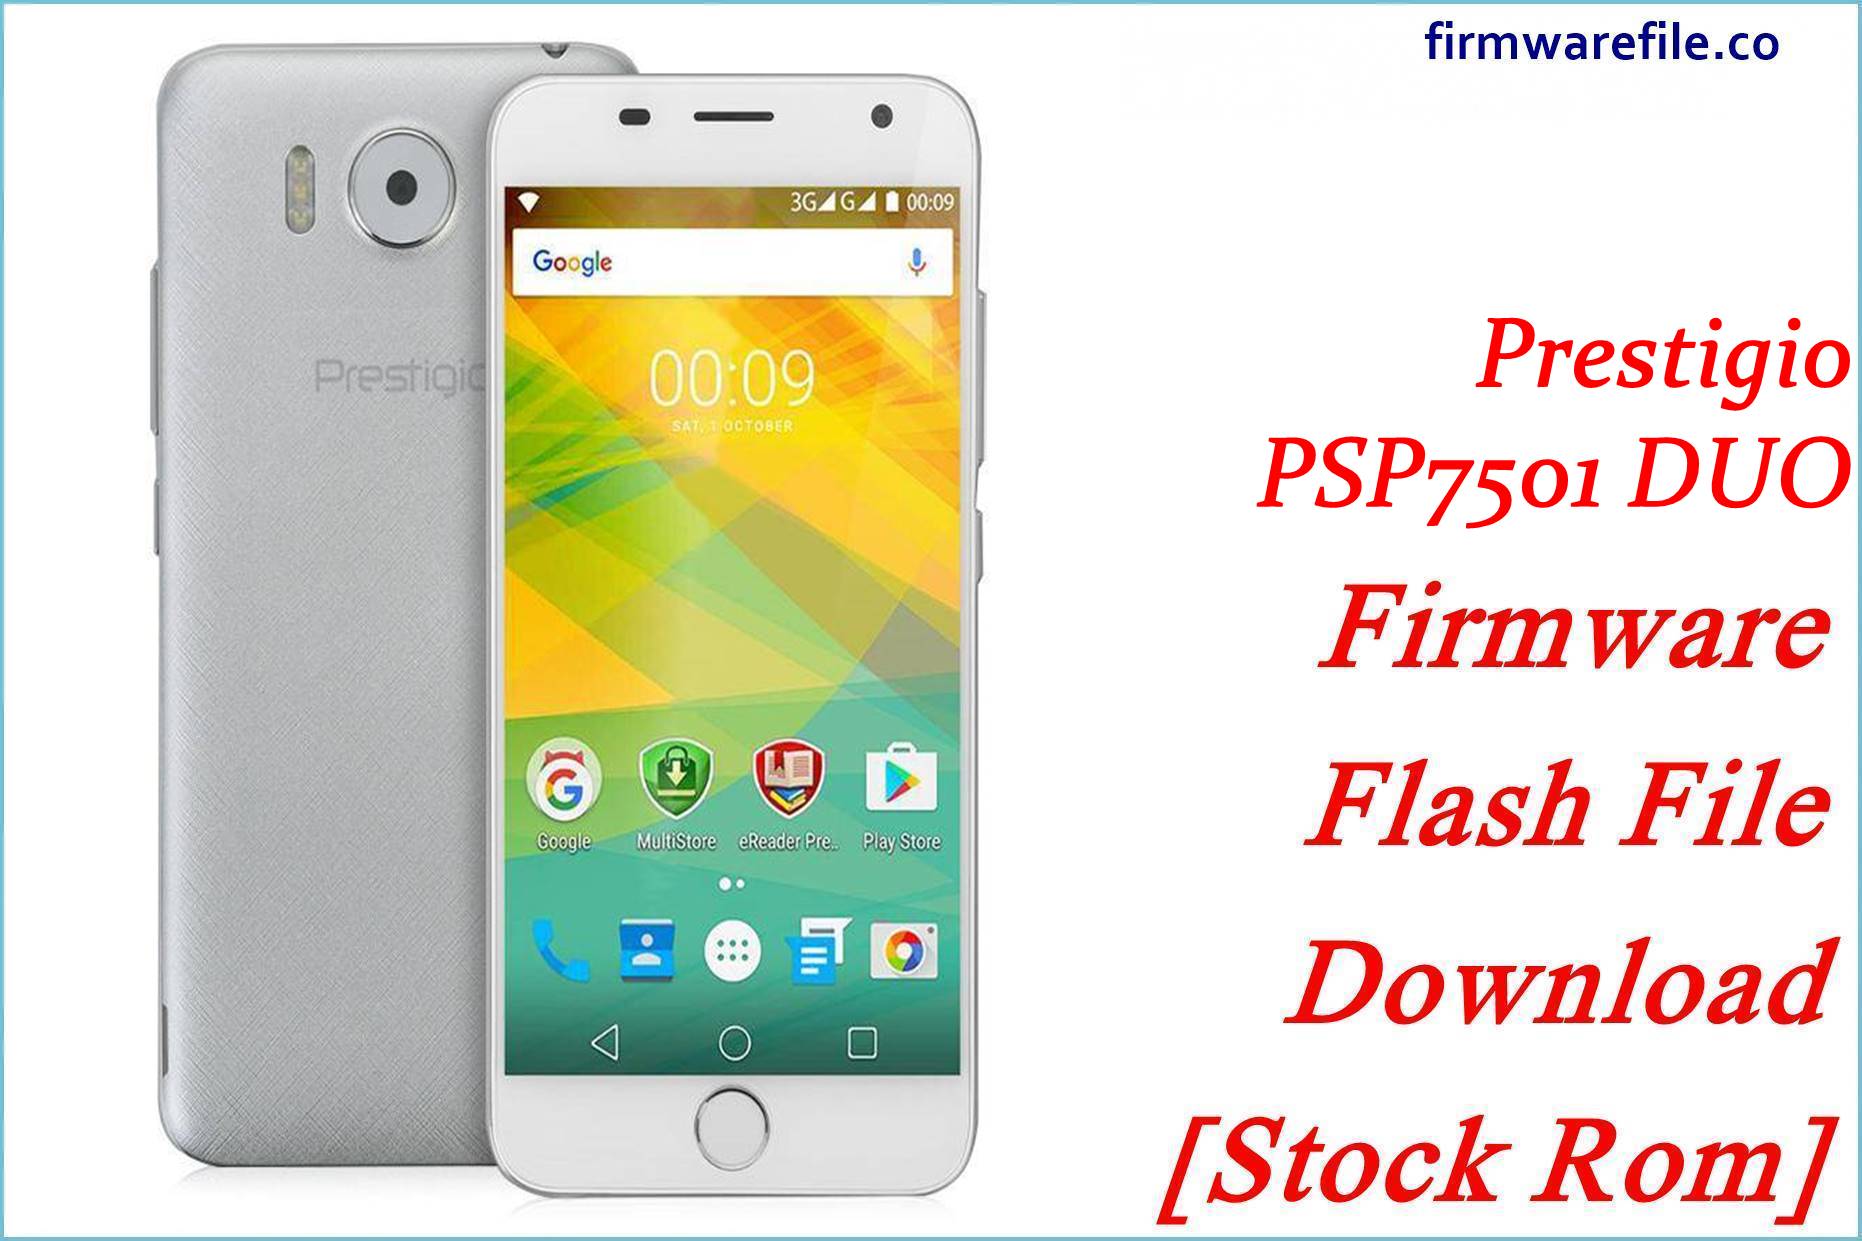 Prestigio PSP7501 DUO Firmware Flash File Download [Stock Rom]